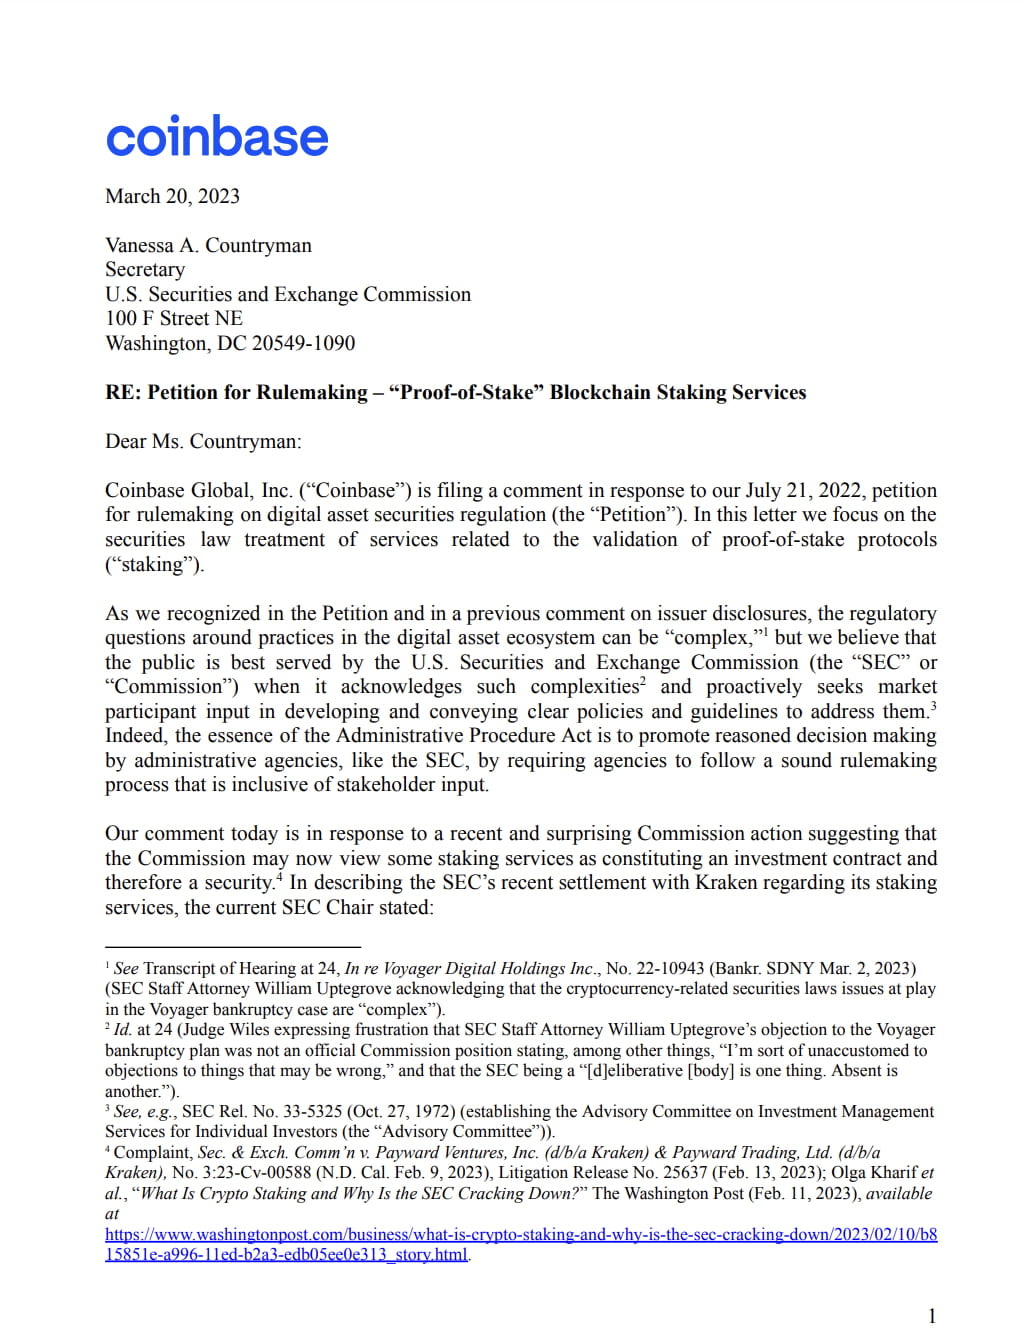 코인베이스, SEC에 의견서 제출…"스테이킹은 증권이 아냐"